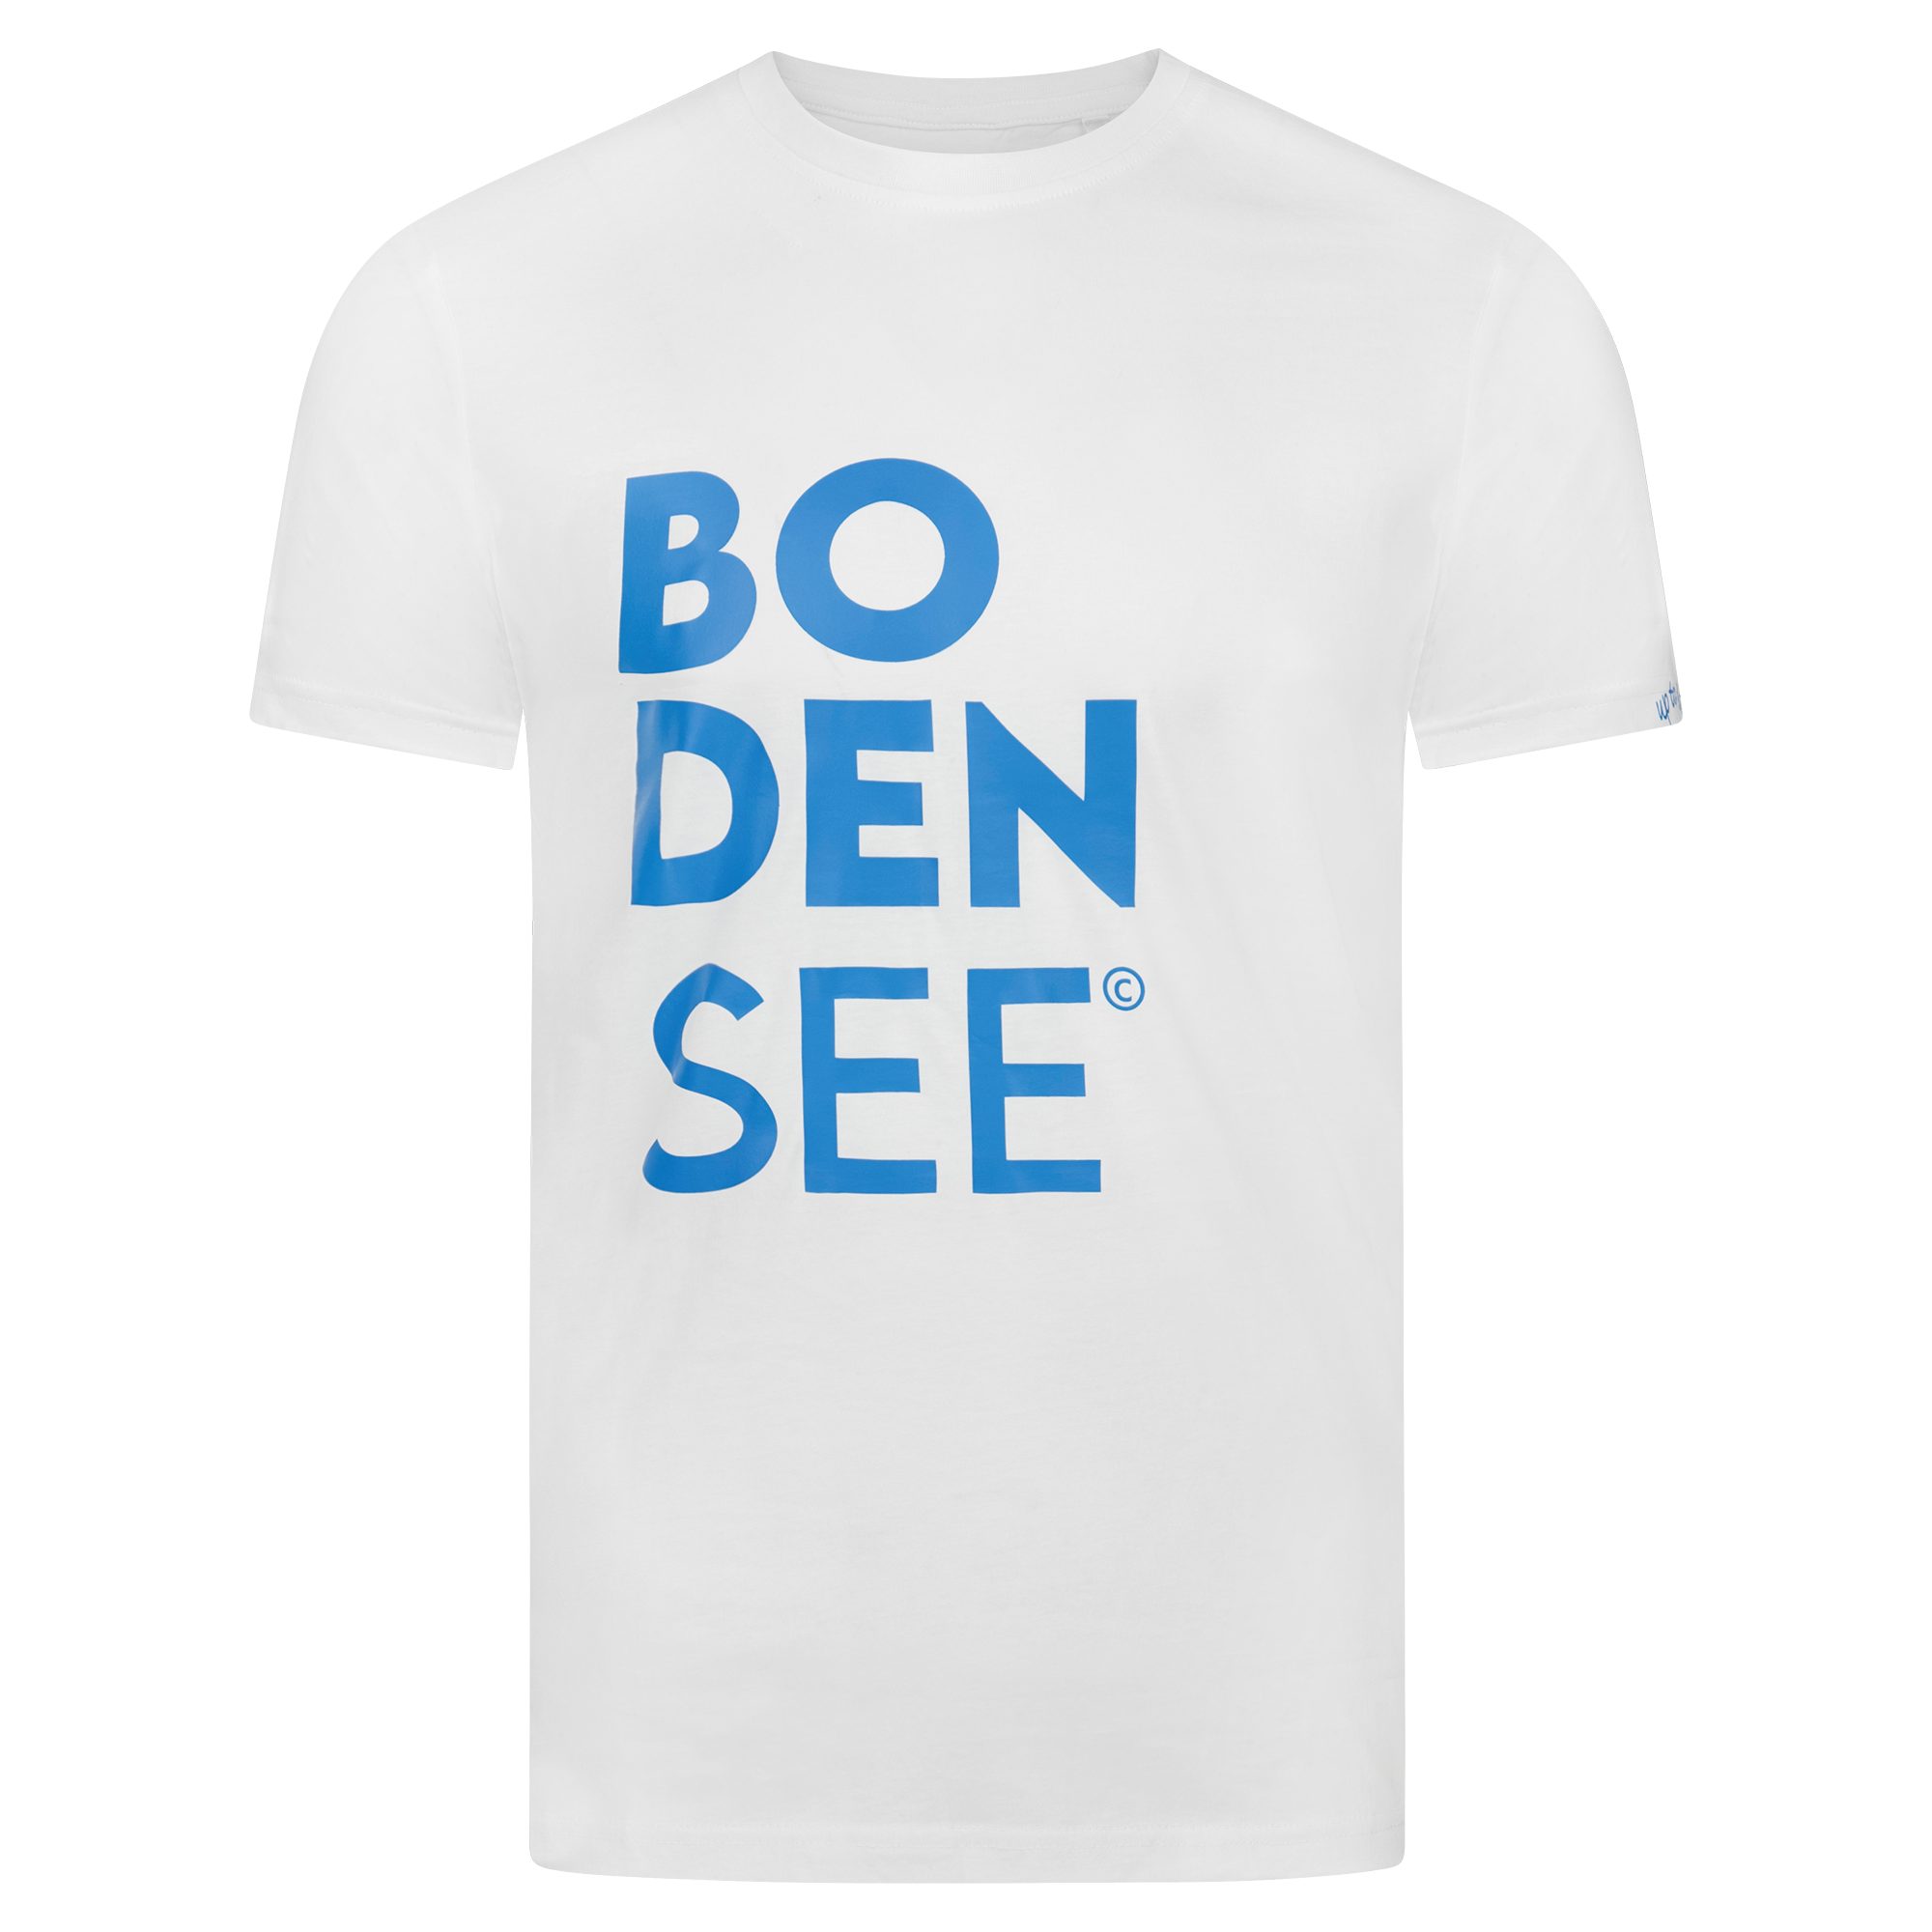 uptolake design T-Shirt für Herren aus Bio Baumwolle mit Bodensee Schriftzug Weiß/Cobalt-Blau